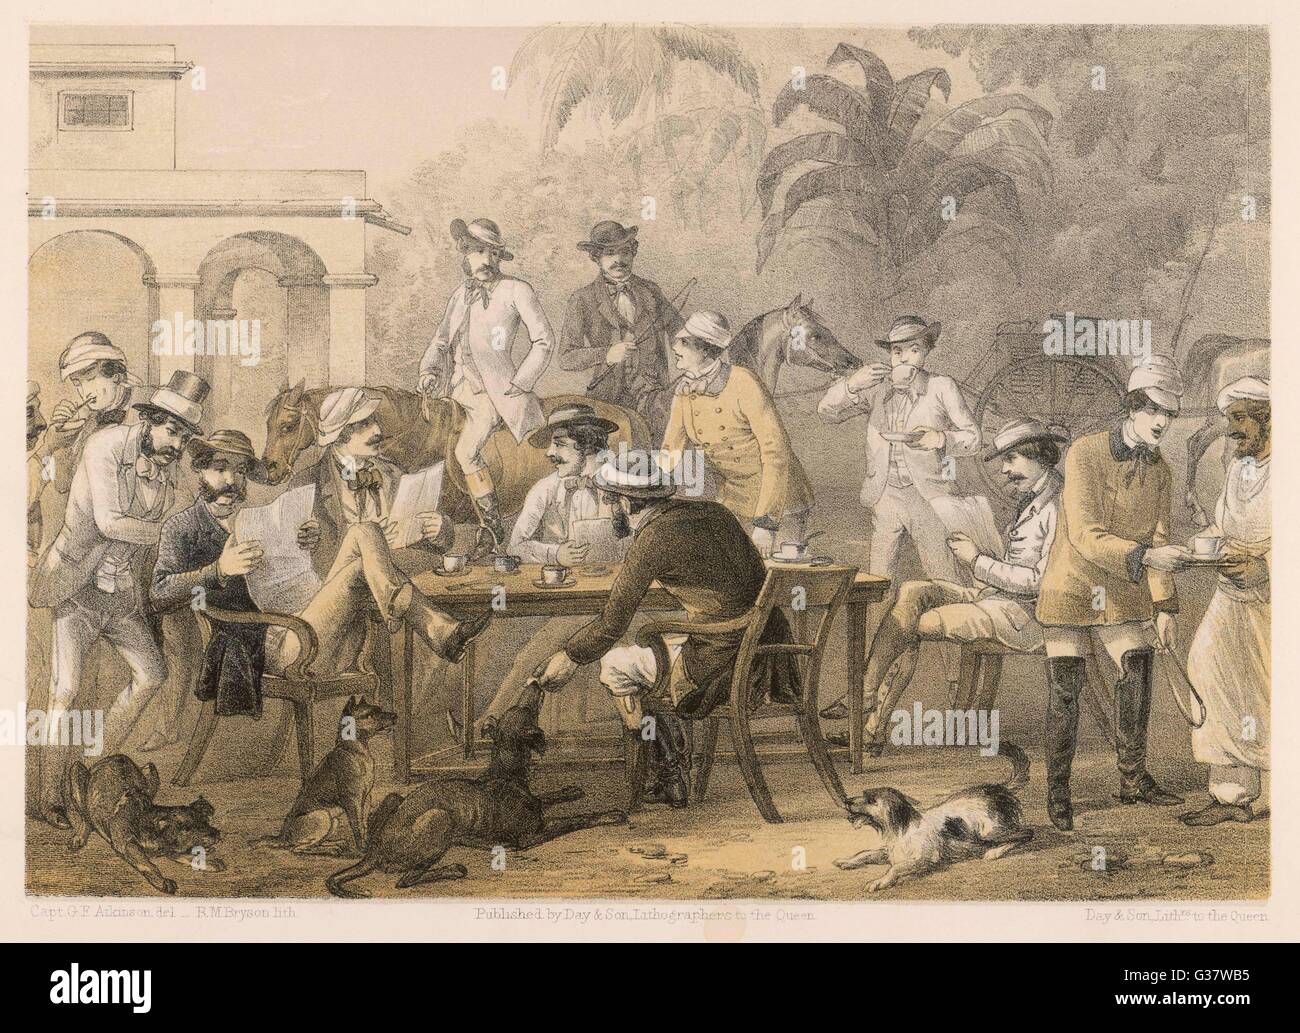 Des hommes britanniques prenant du café en Inde, 1860 Banque D'Images